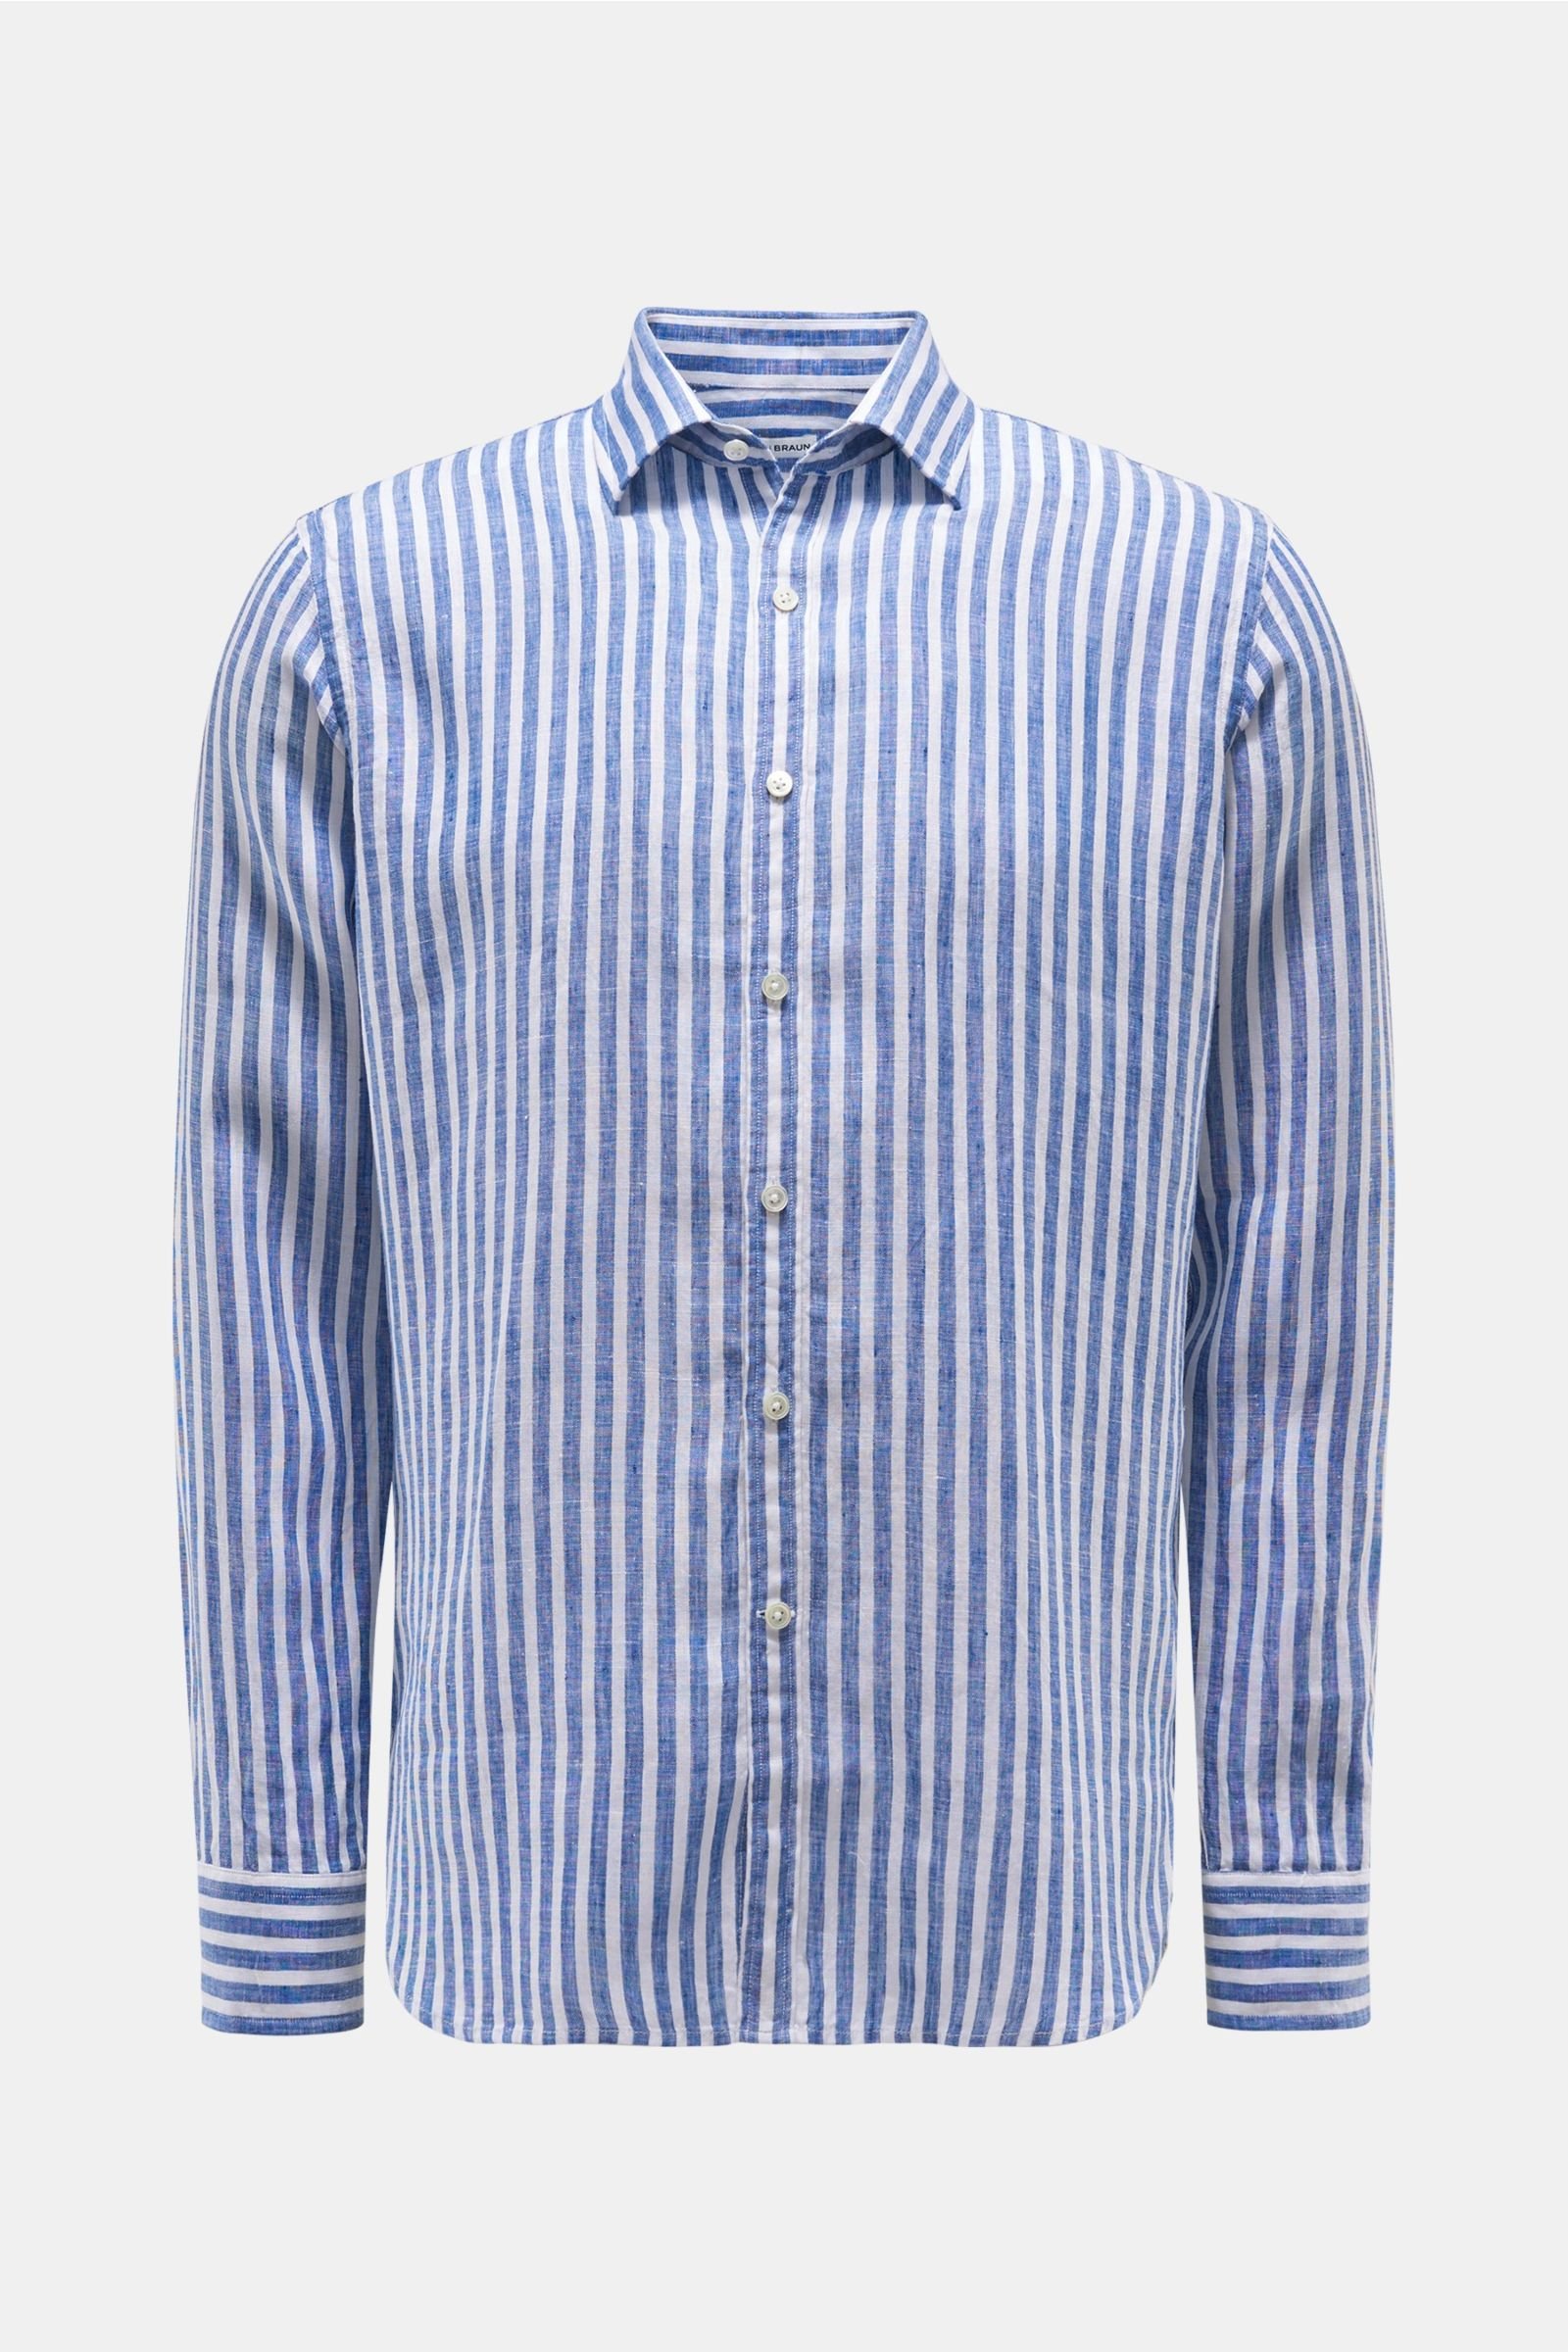 Linen shirt Kent collar navy/white striped